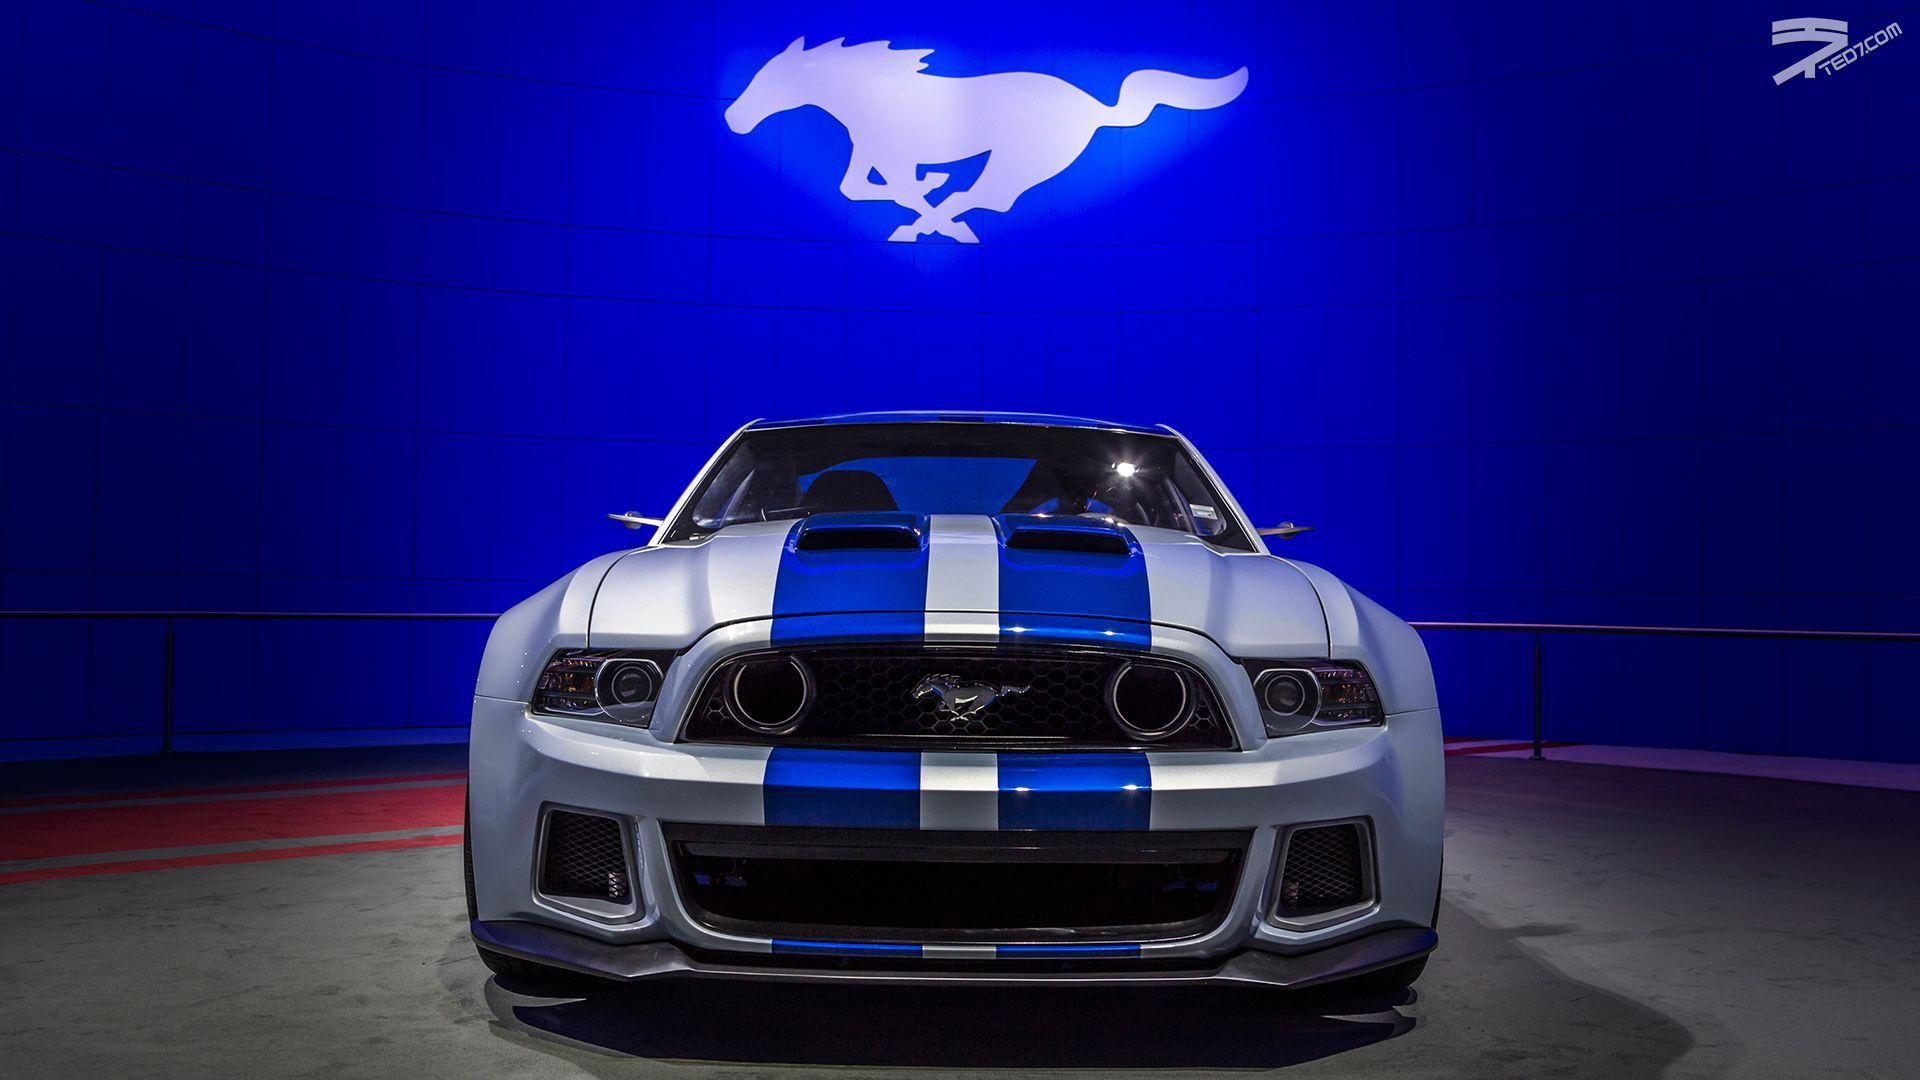 Hình nền Mustang trong Need for Speed - Top Những Hình Ảnh Đẹp